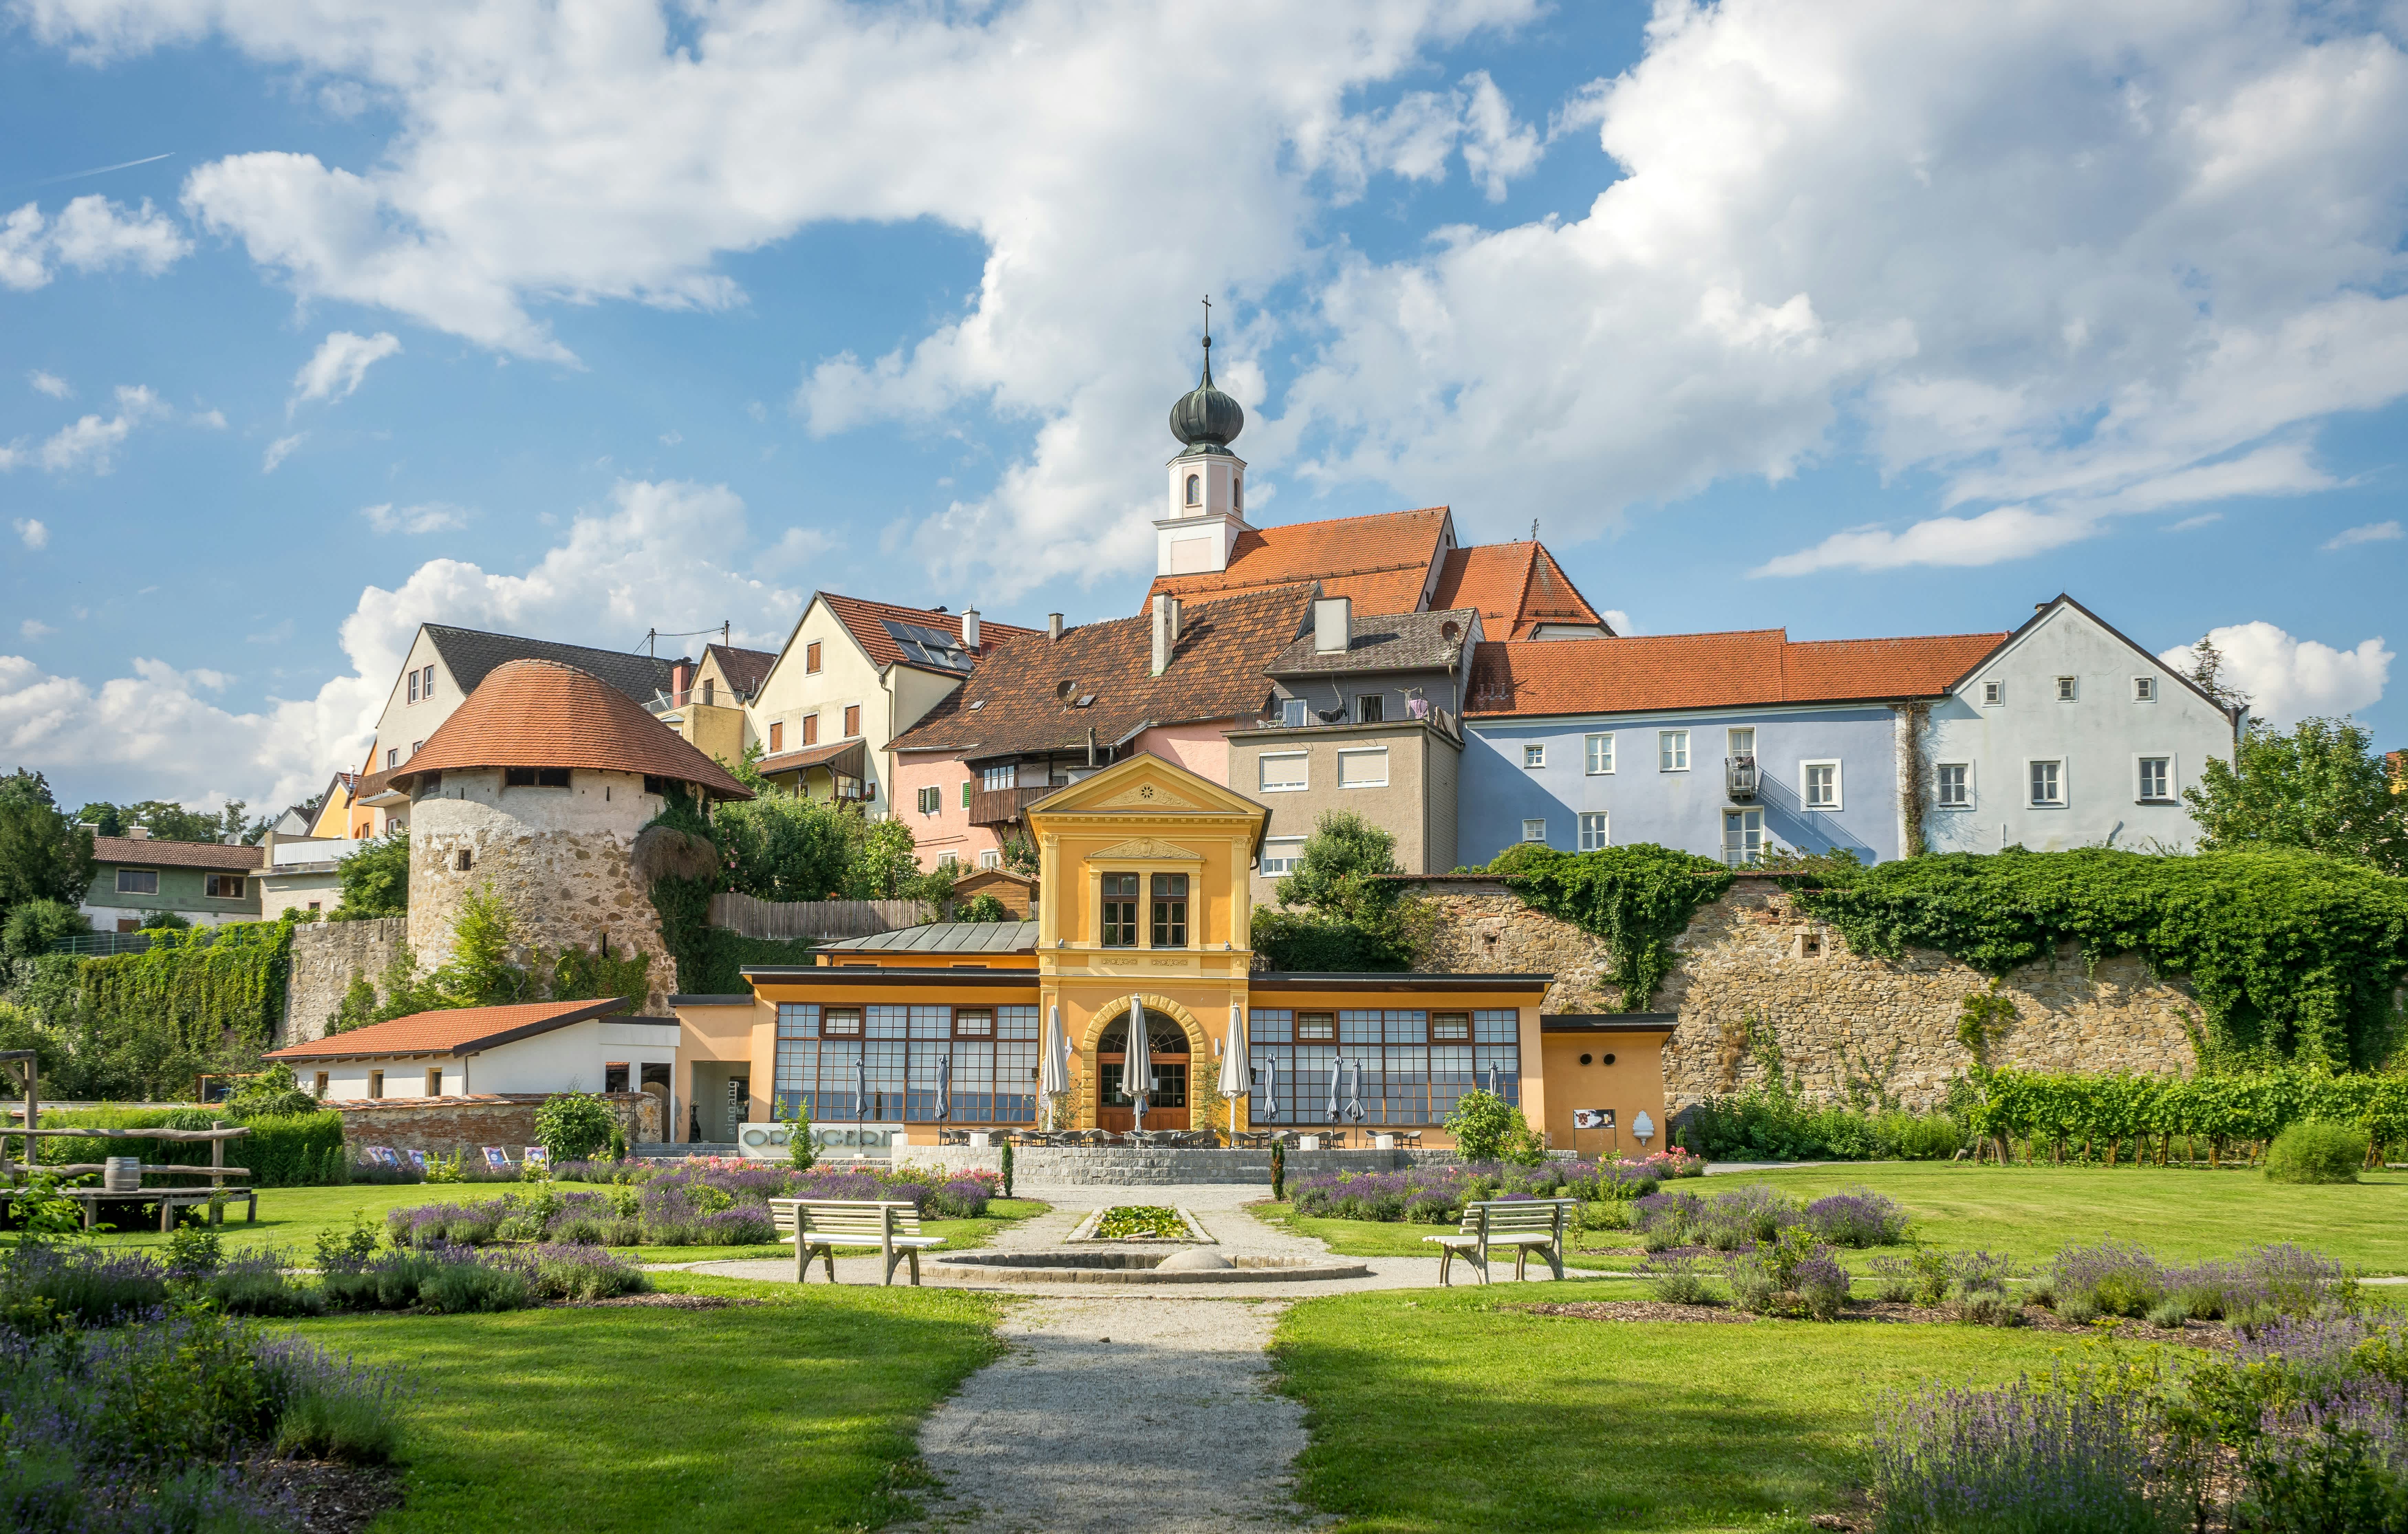 Erleben Sie die hohe Lebensqualität und regionale Highlights von Steyregg, Oberösterreich. Entdecken Sie die Schönheit dieser Region! #Steyregg #Oberösterreich